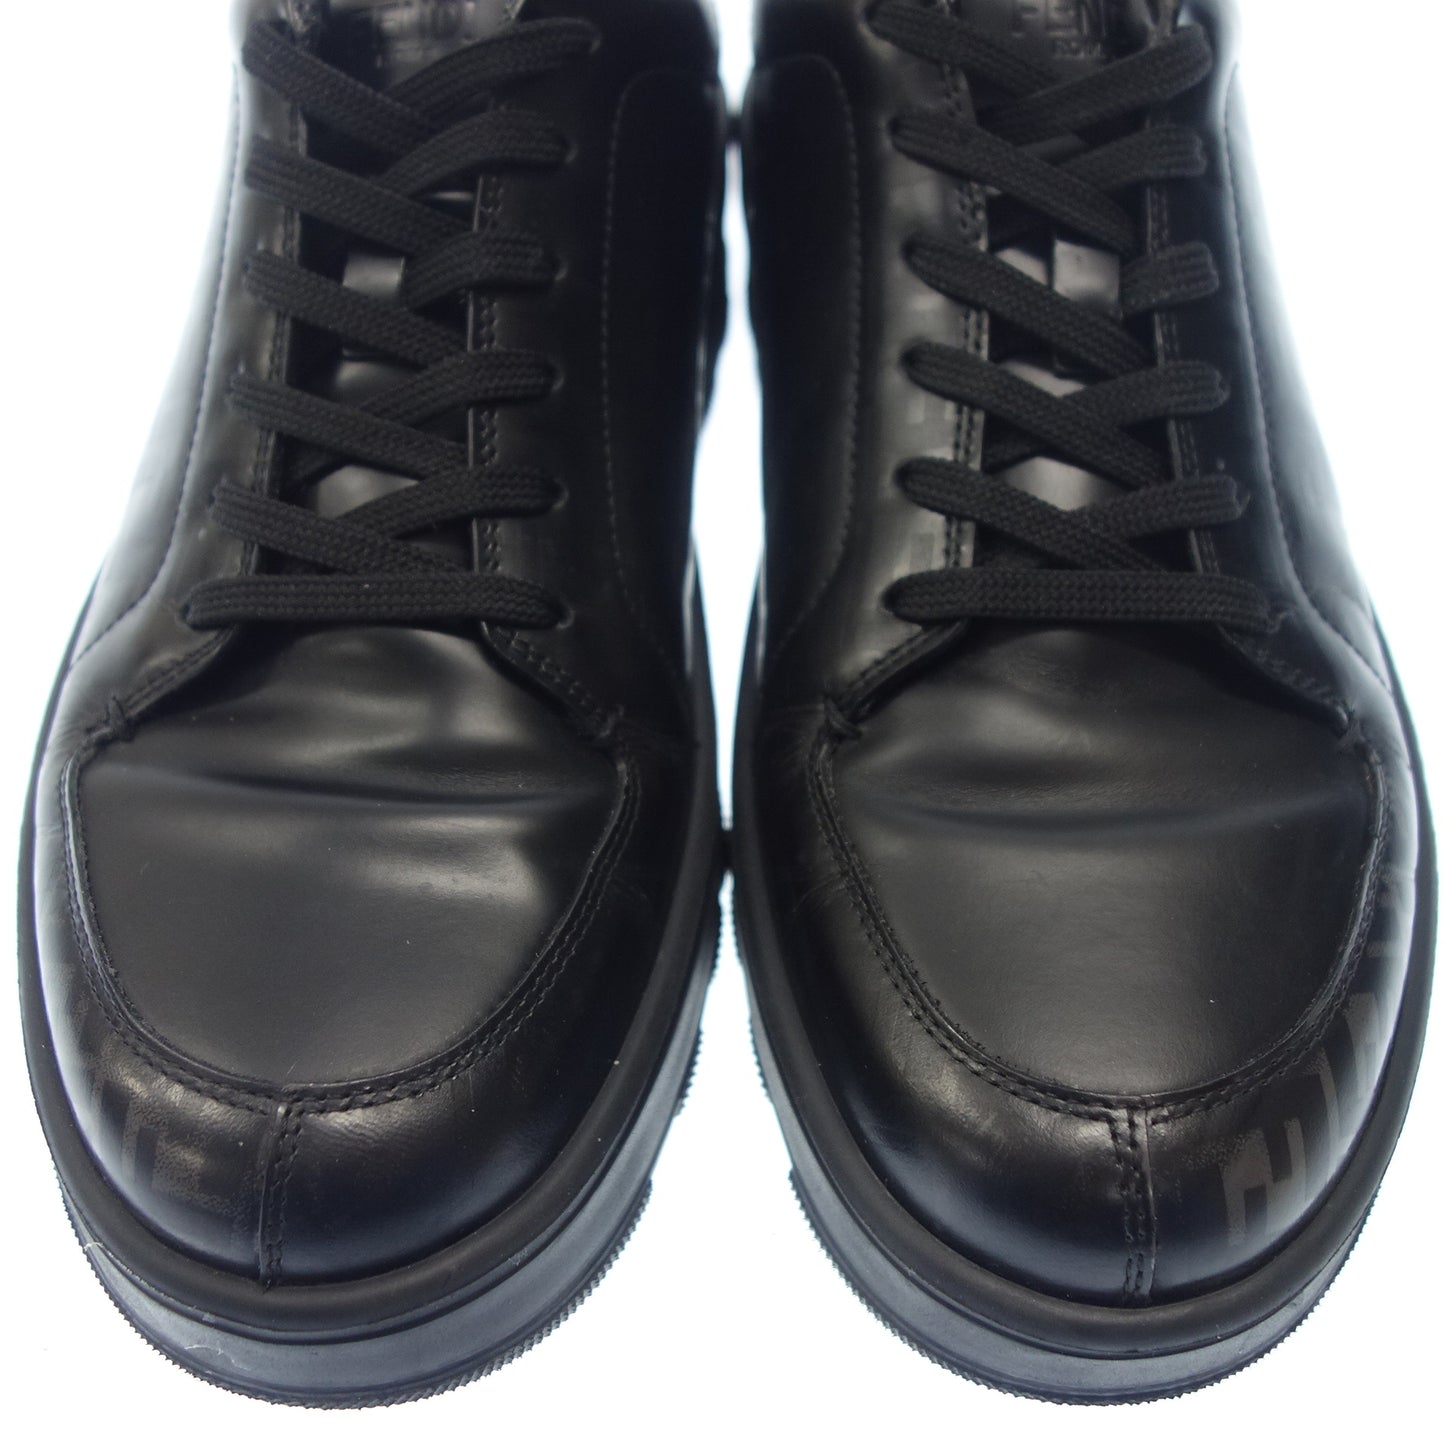 芬迪 皮革运动鞋 Zucca 1297 男式 7E 黑色 FENDI [AFC17] [二手] 